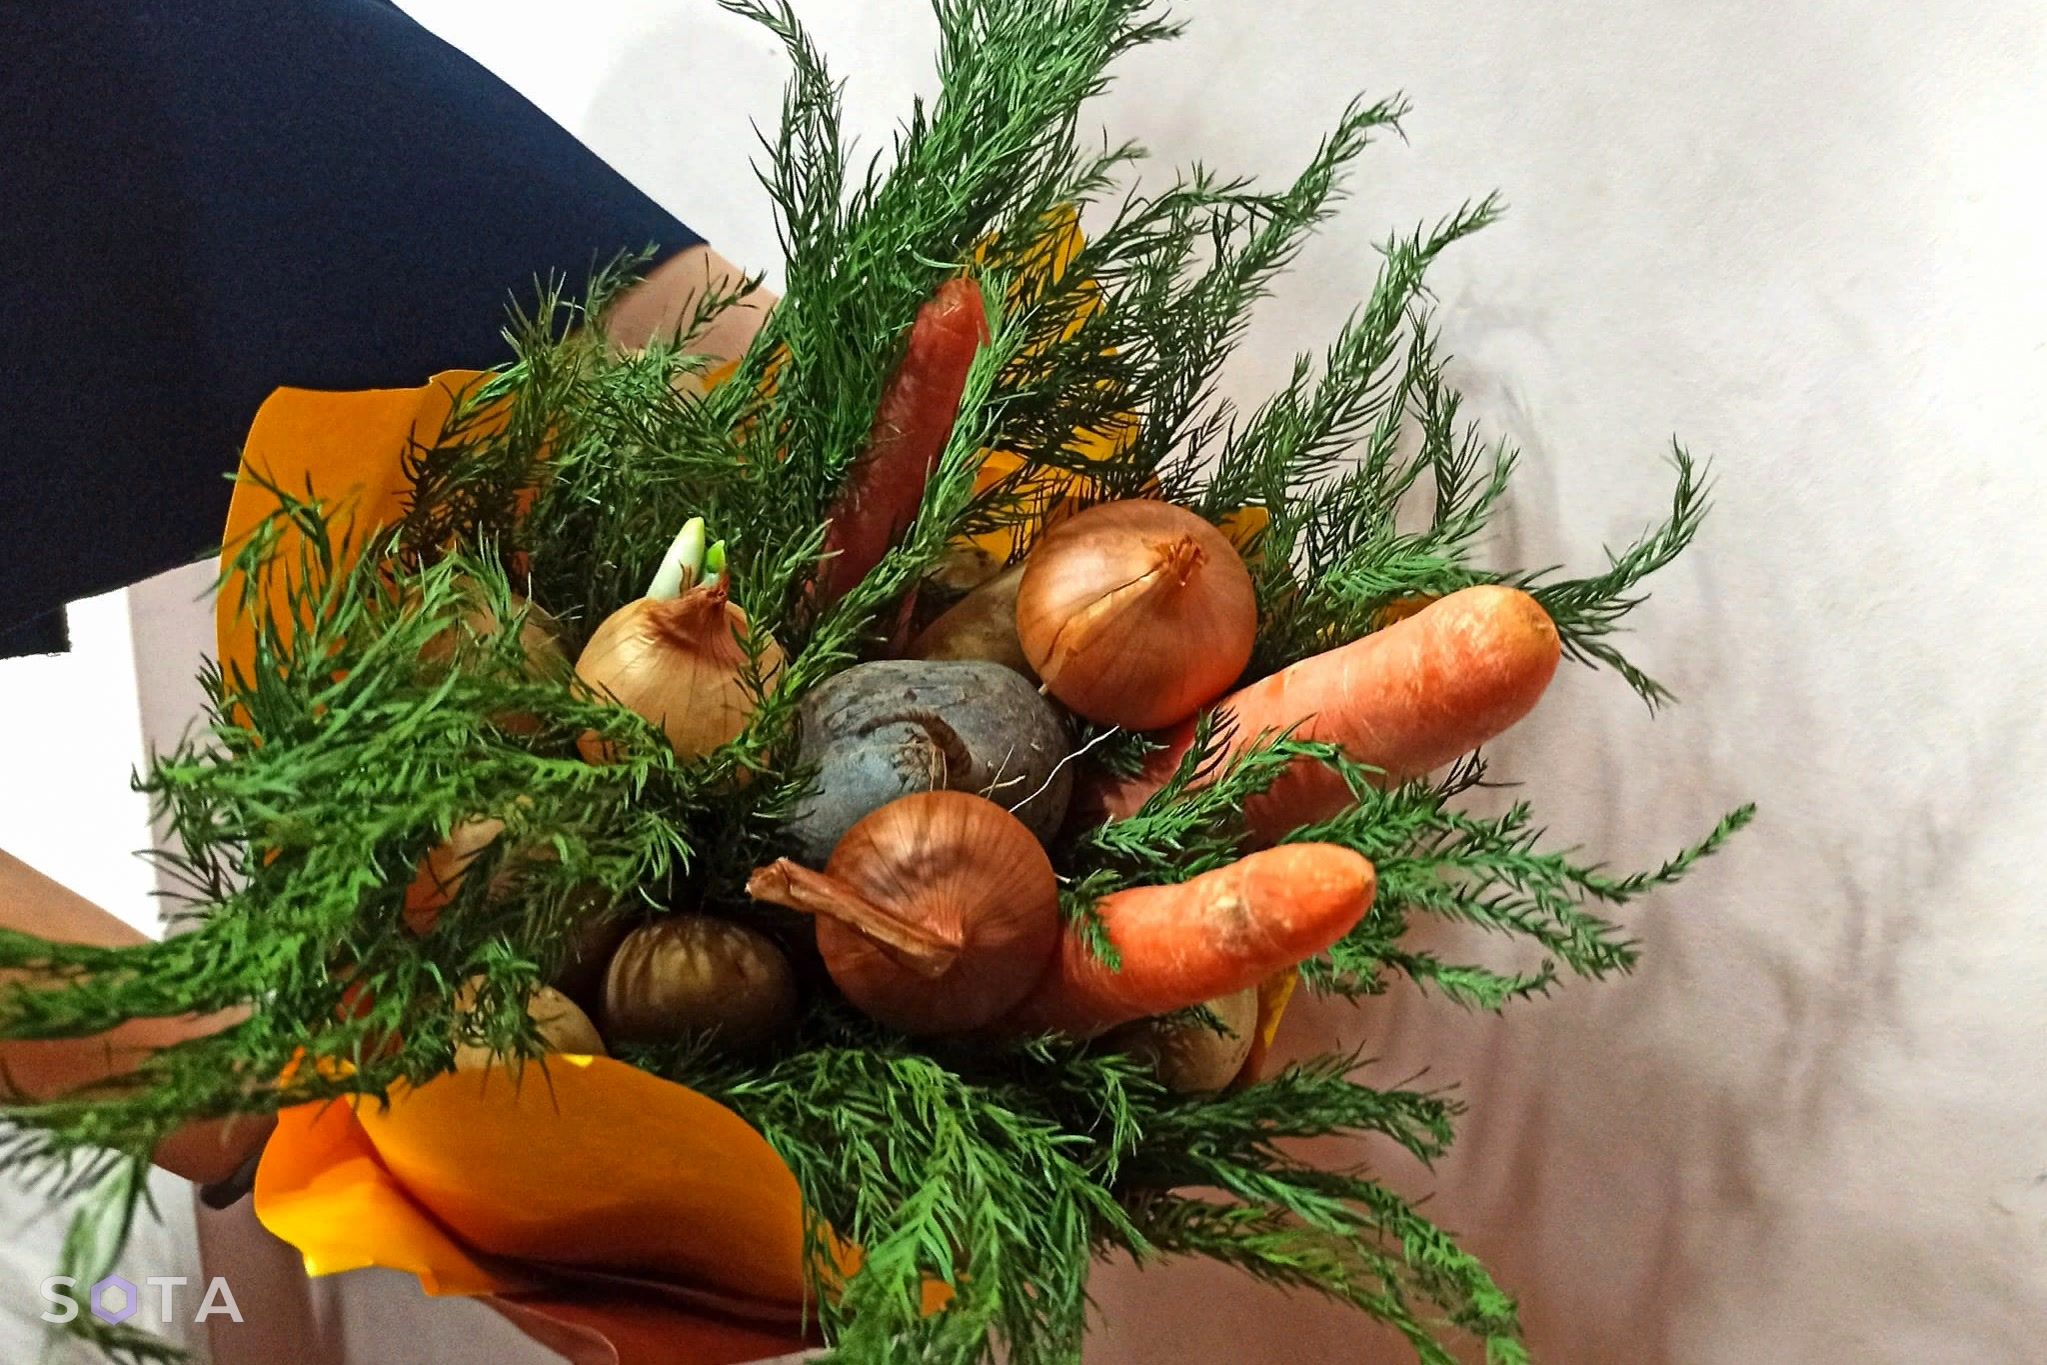 Лучший букет в Арцахе сейчас состоит из свежих овощей
Фото: SOTA